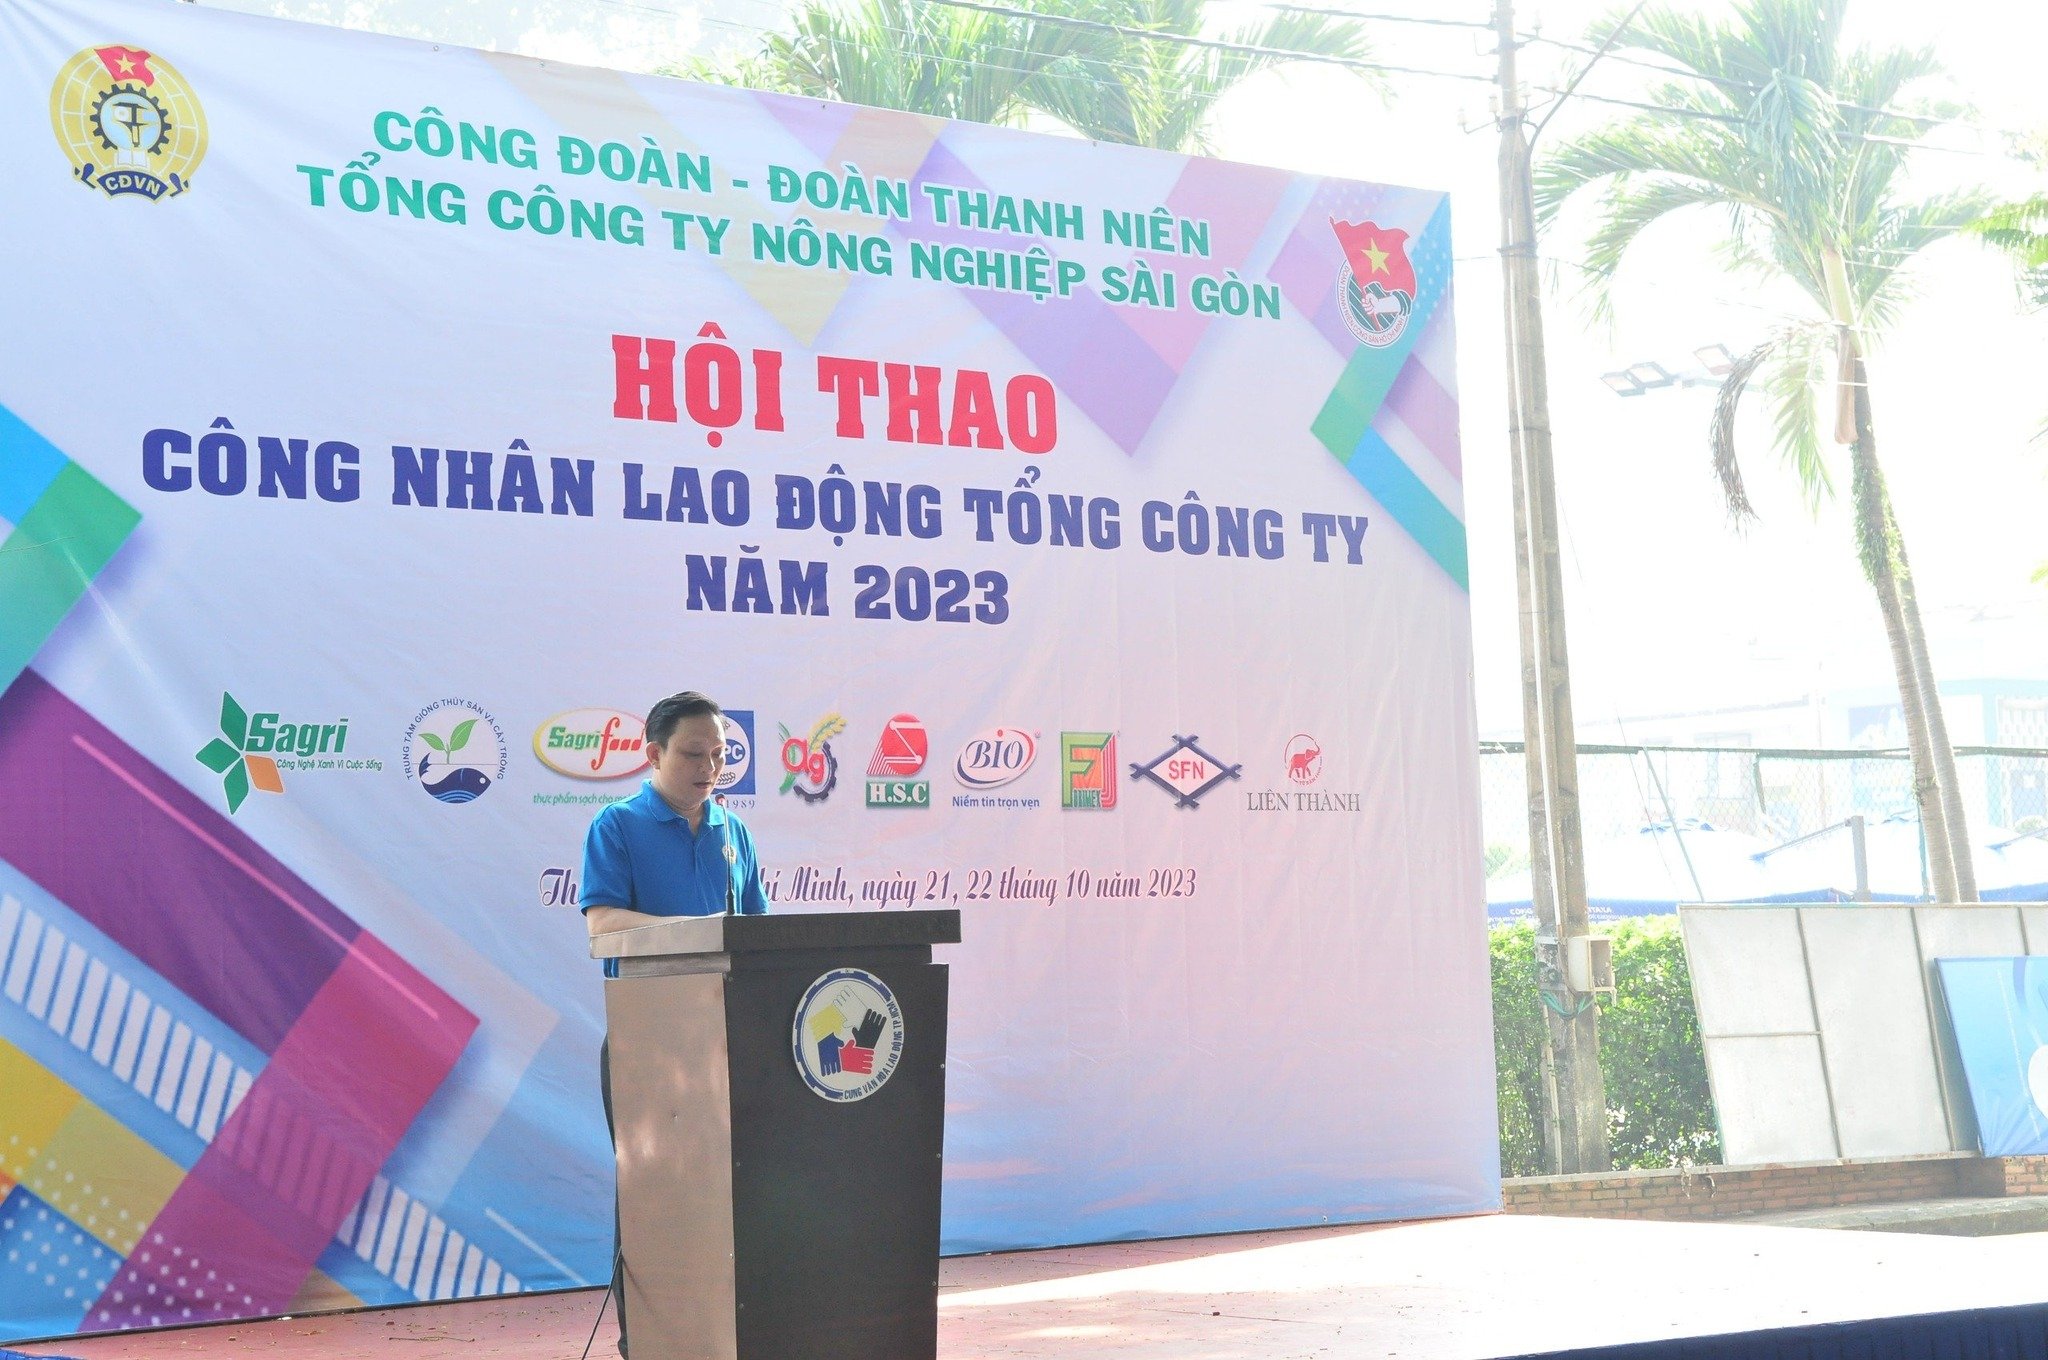 Tổng Công ty Nông nghiệp Sài Gòn sôi nổi hội thao Công nhân lao động năm 2023